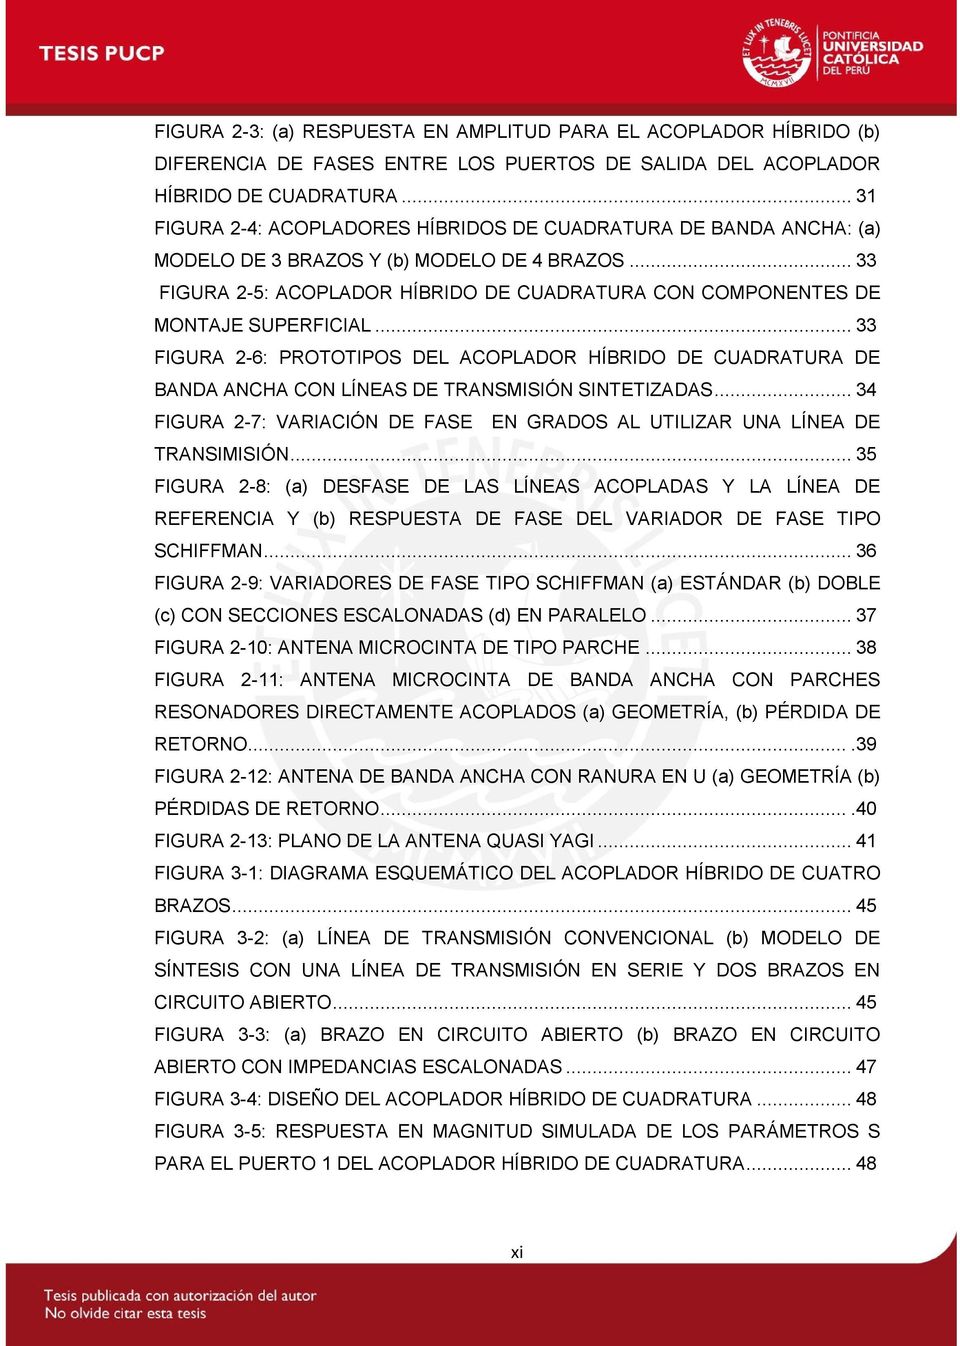 .. 33 FIGURA 2-5: ACOPLADOR HÍBRIDO DE CUADRATURA CON COMPONENTES DE MONTAJE SUPERFICIAL.